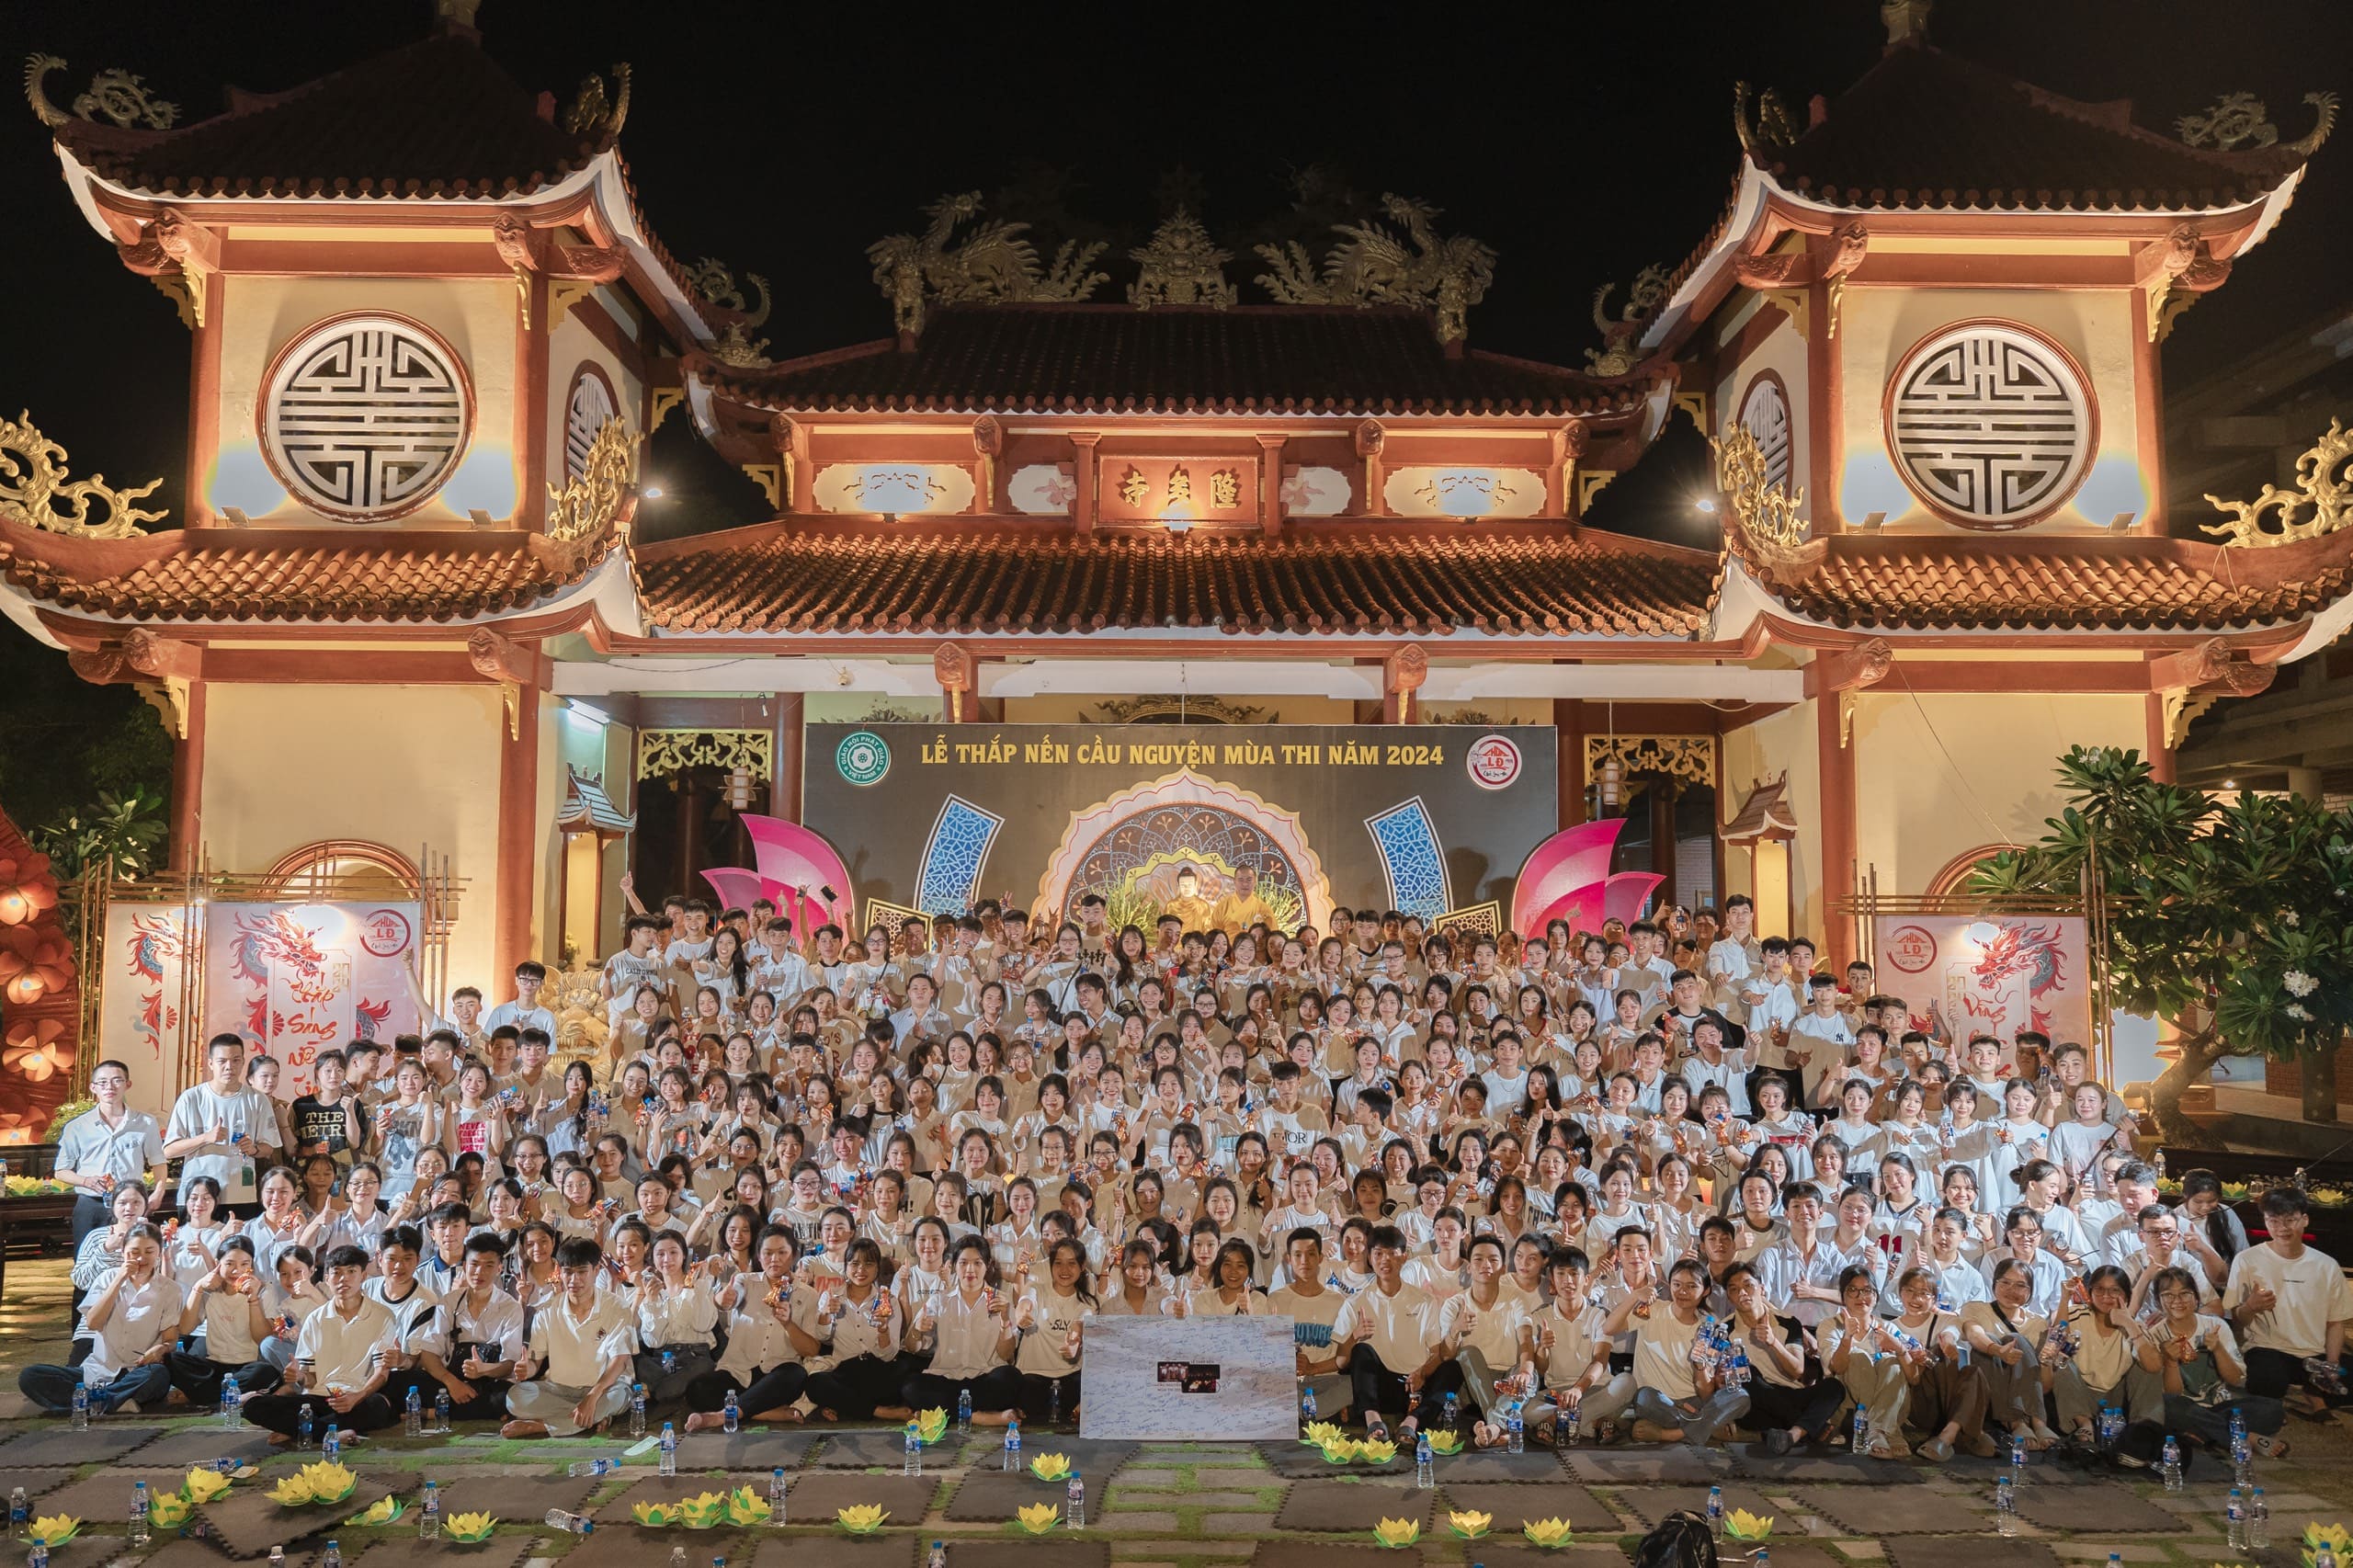 Gần 400 sĩ tử về chùa Long Đa dự lễ cầu nguyện mùa thi năm 2024